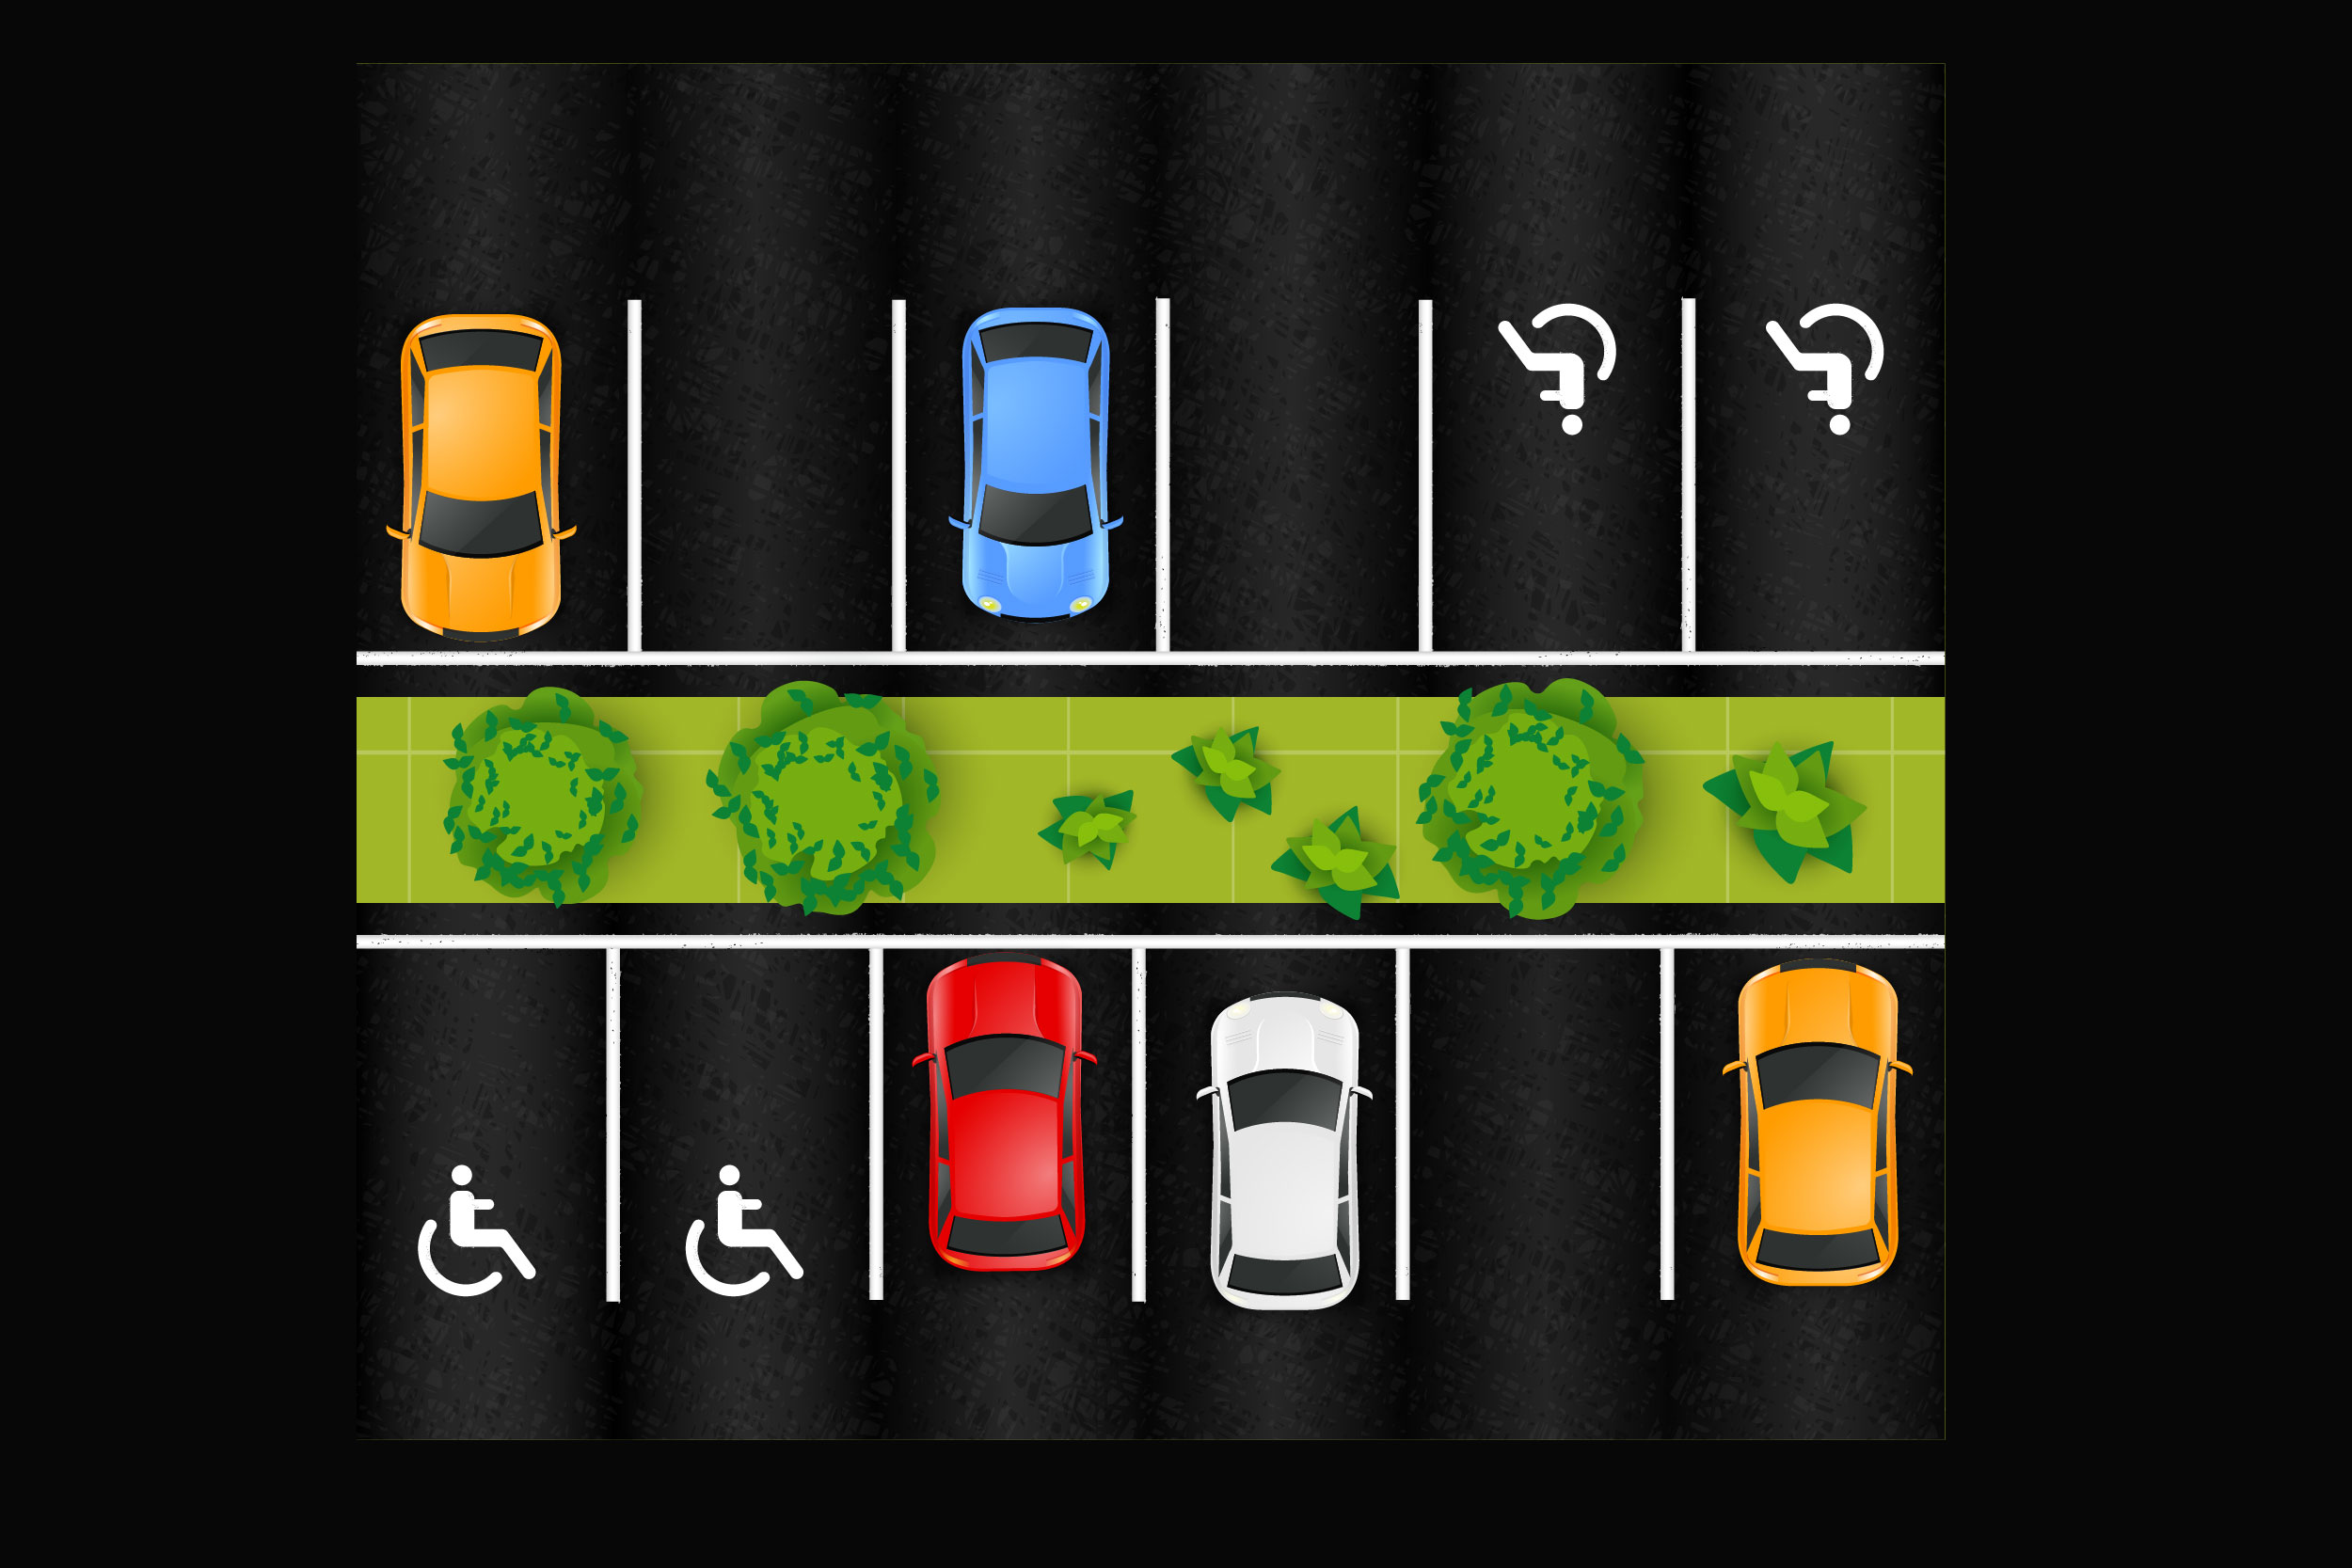 Ilustração mostra visão de cima de estacionamento com carros e vagas reservadas para pessoas com deficiência